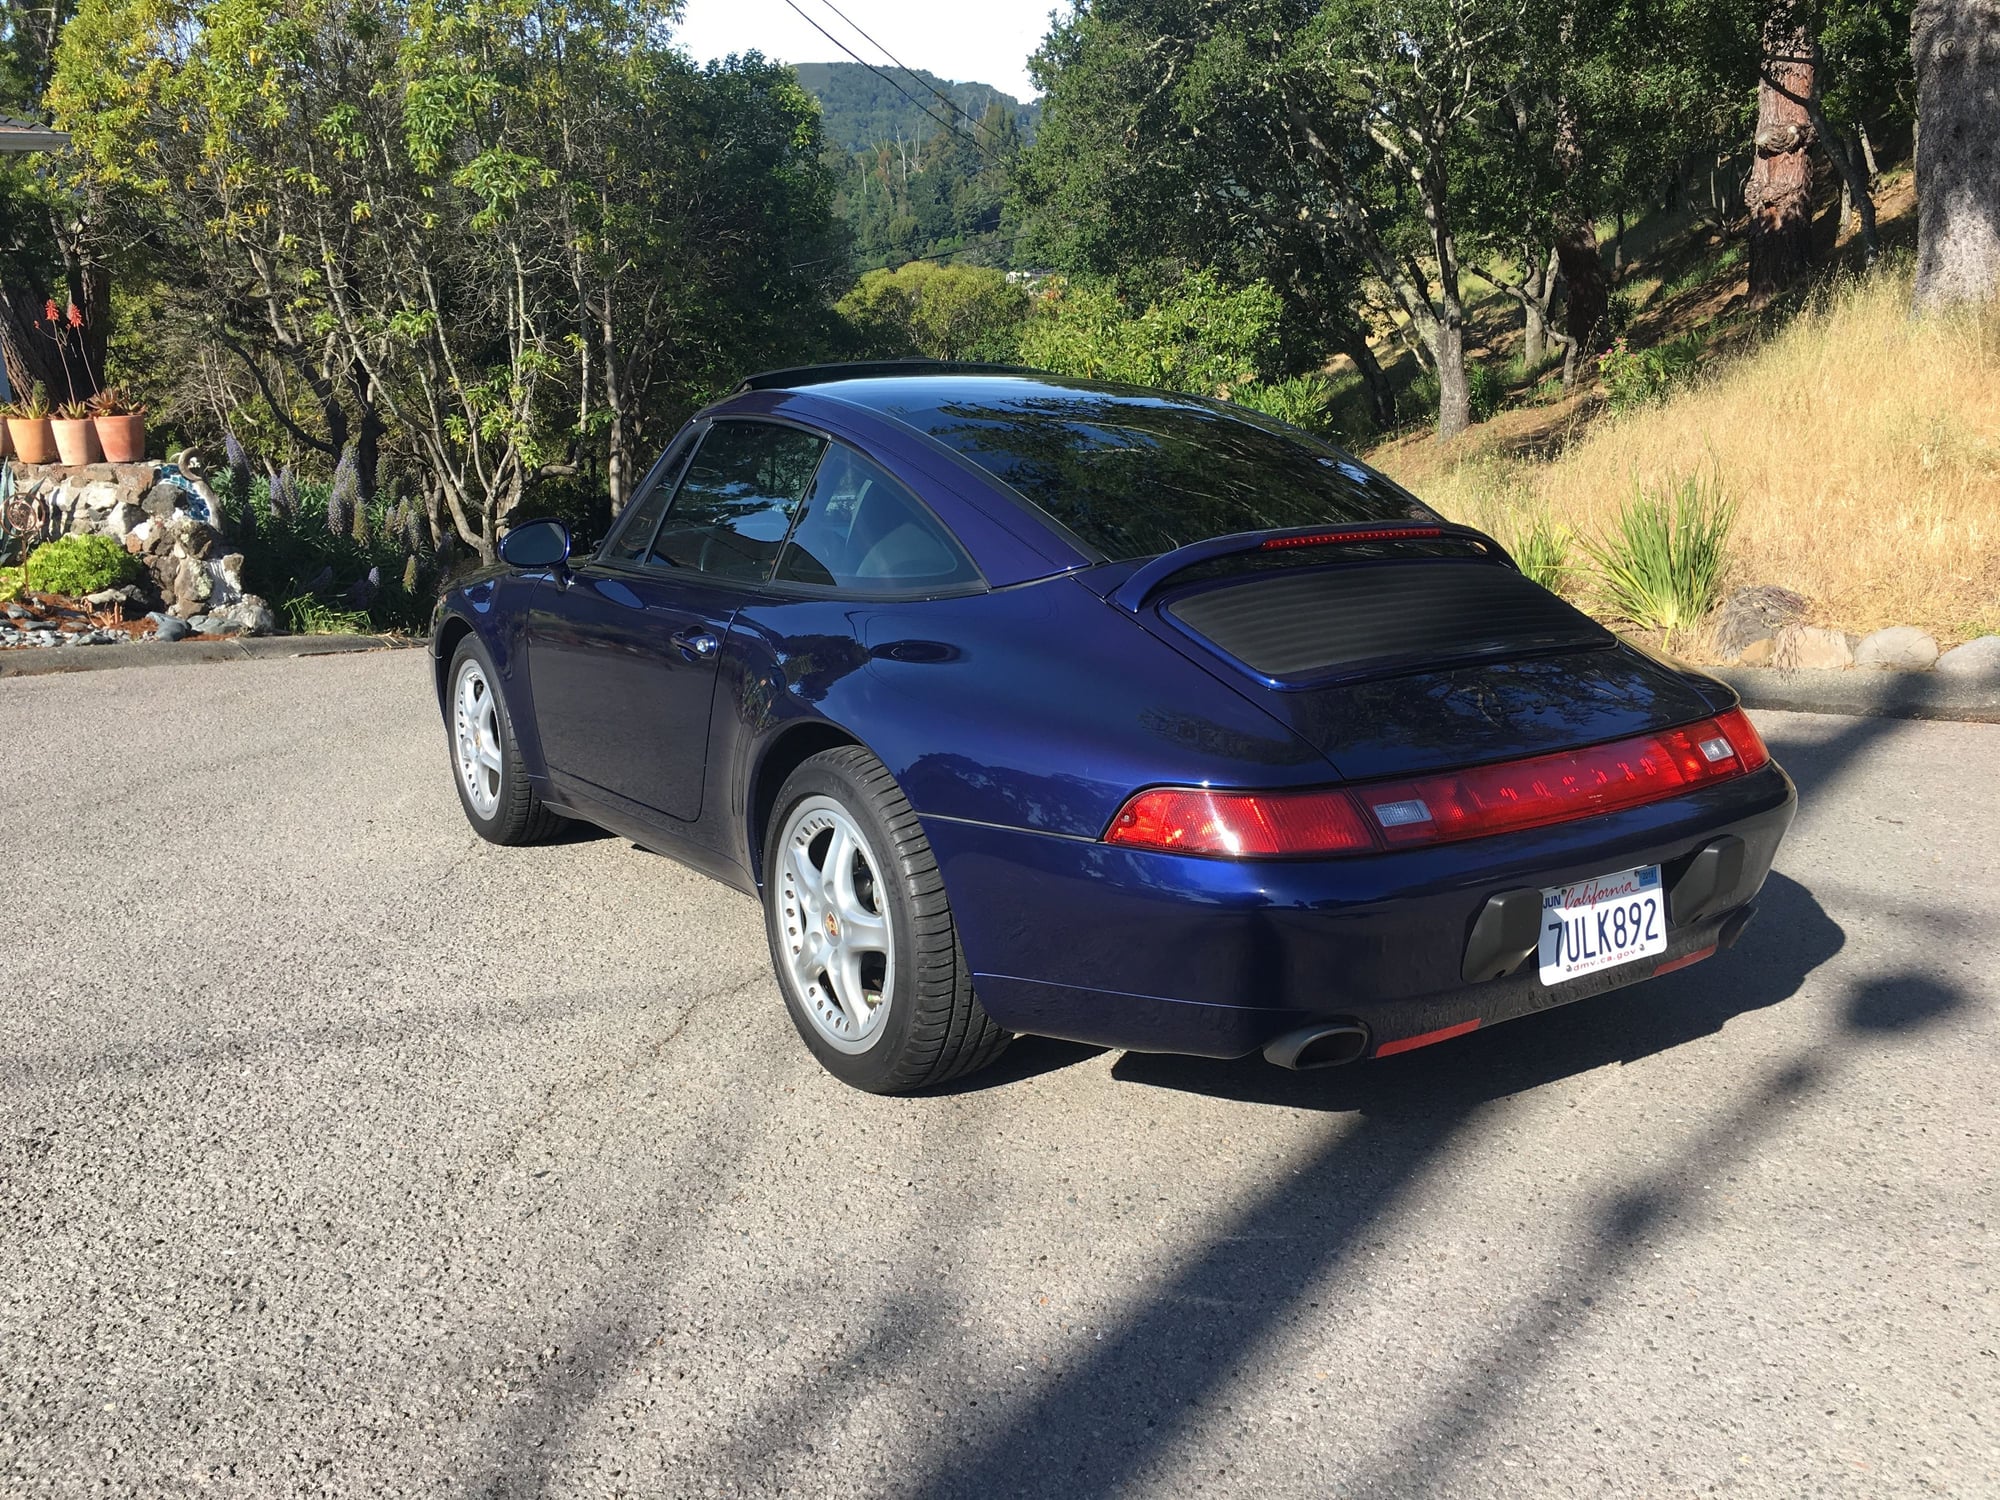 1996 Porsche 911 - 1996 Porsche 911 Carrera Targa 993 - Used - VIN WP0DA2990TS385256 - 99,000 Miles - 6 cyl - 2WD - Manual - Coupe - Blue - San Anselmo, CA 94960, United States